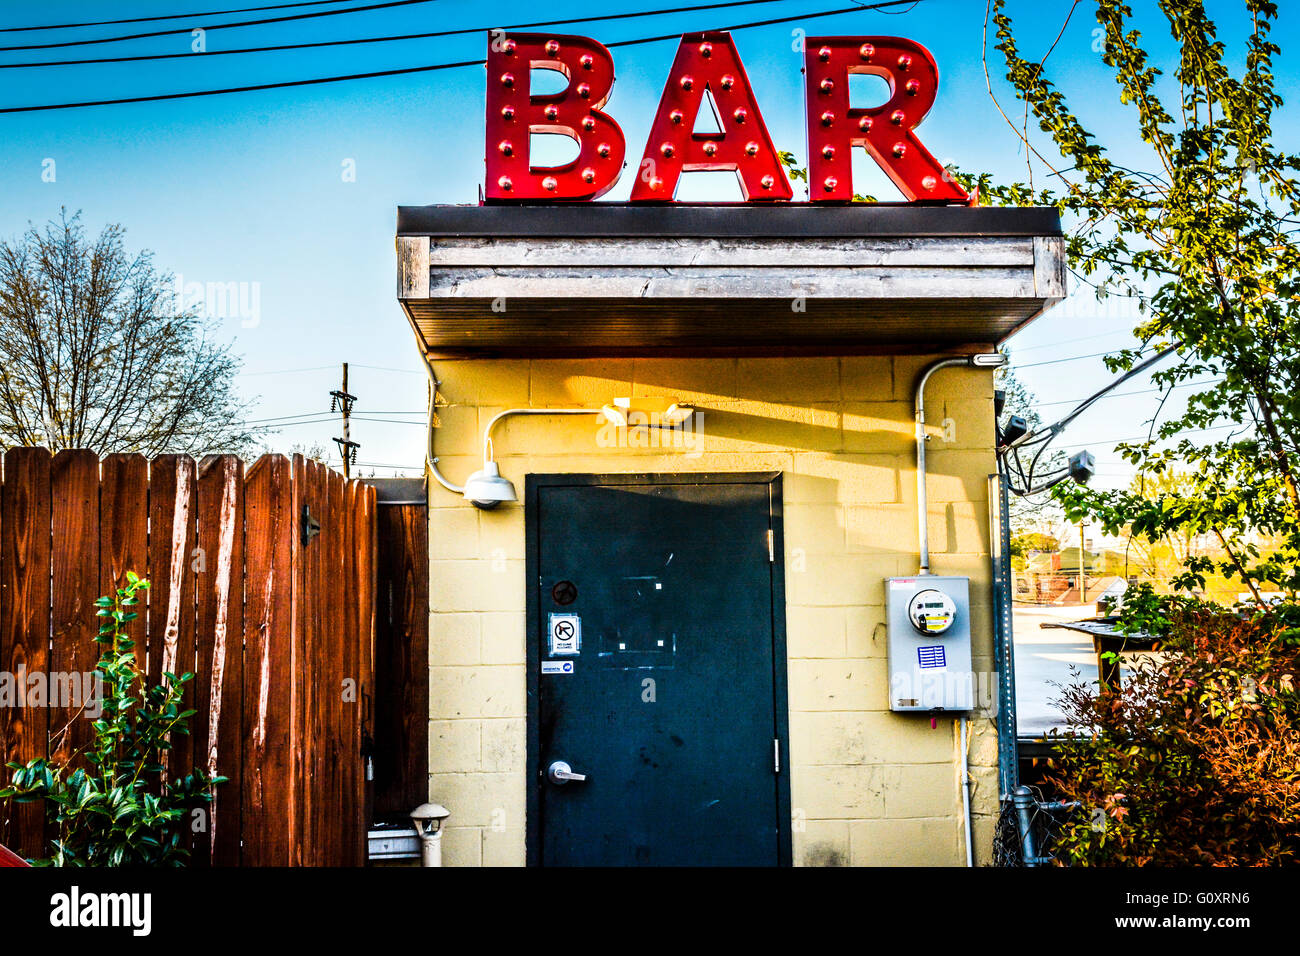 Un concept faible bord industriel à une porte d'entrée d'une Dive bar avec un énorme panneau rouge 'bar' sur le toit semble étrange et arty Banque D'Images